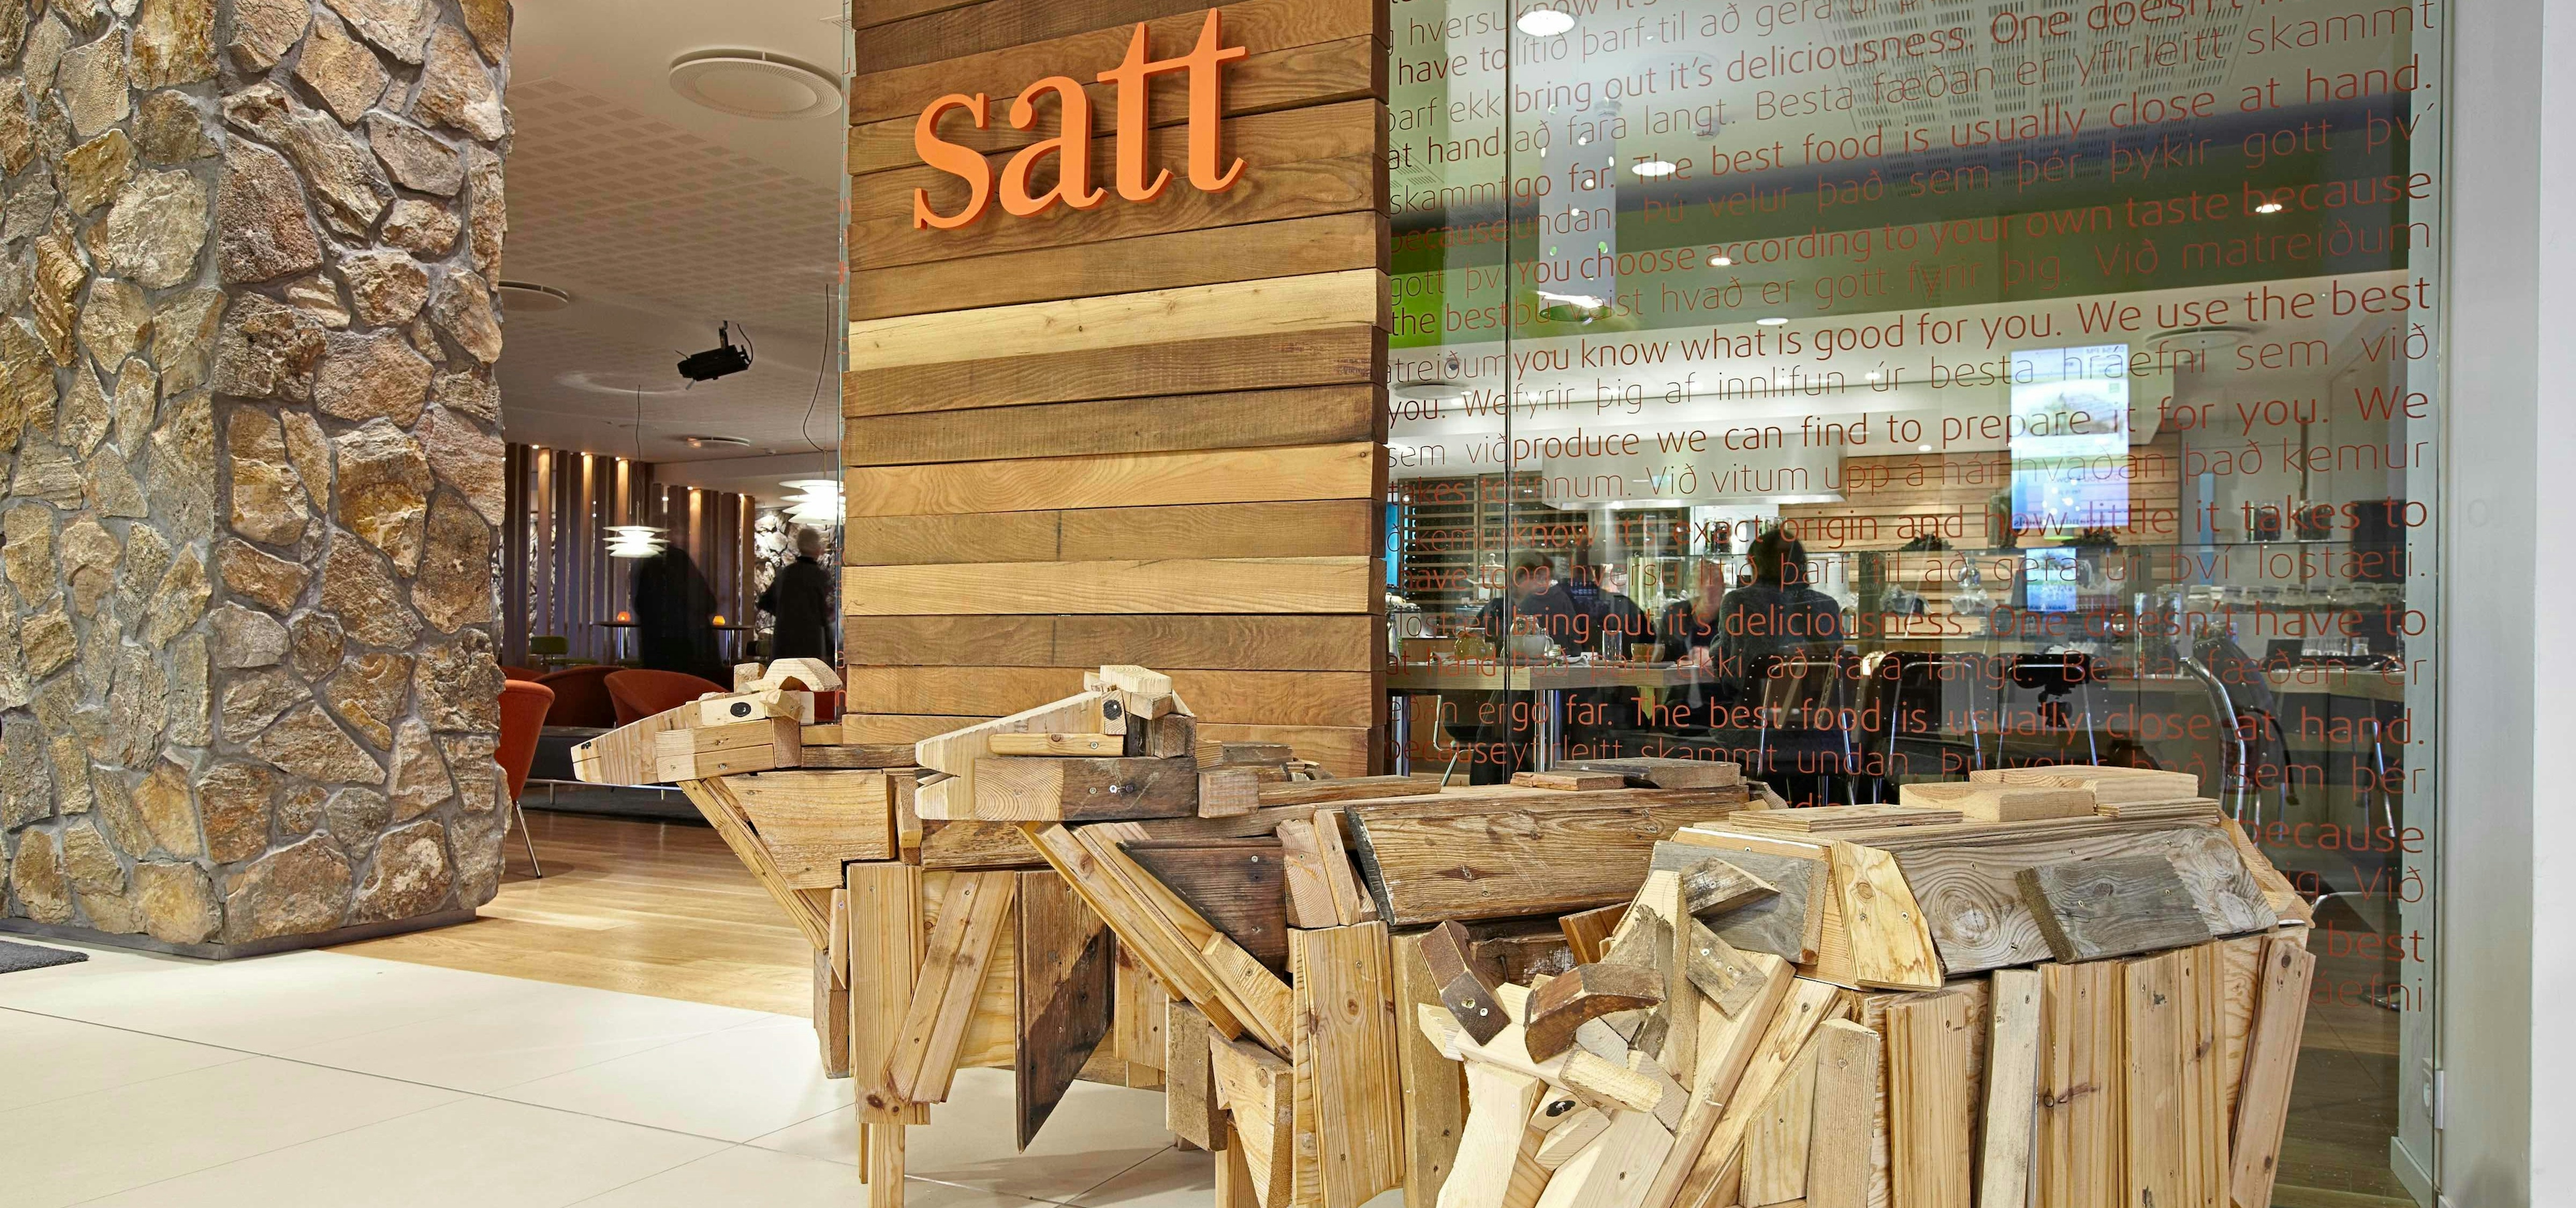 Satt Restaurant 